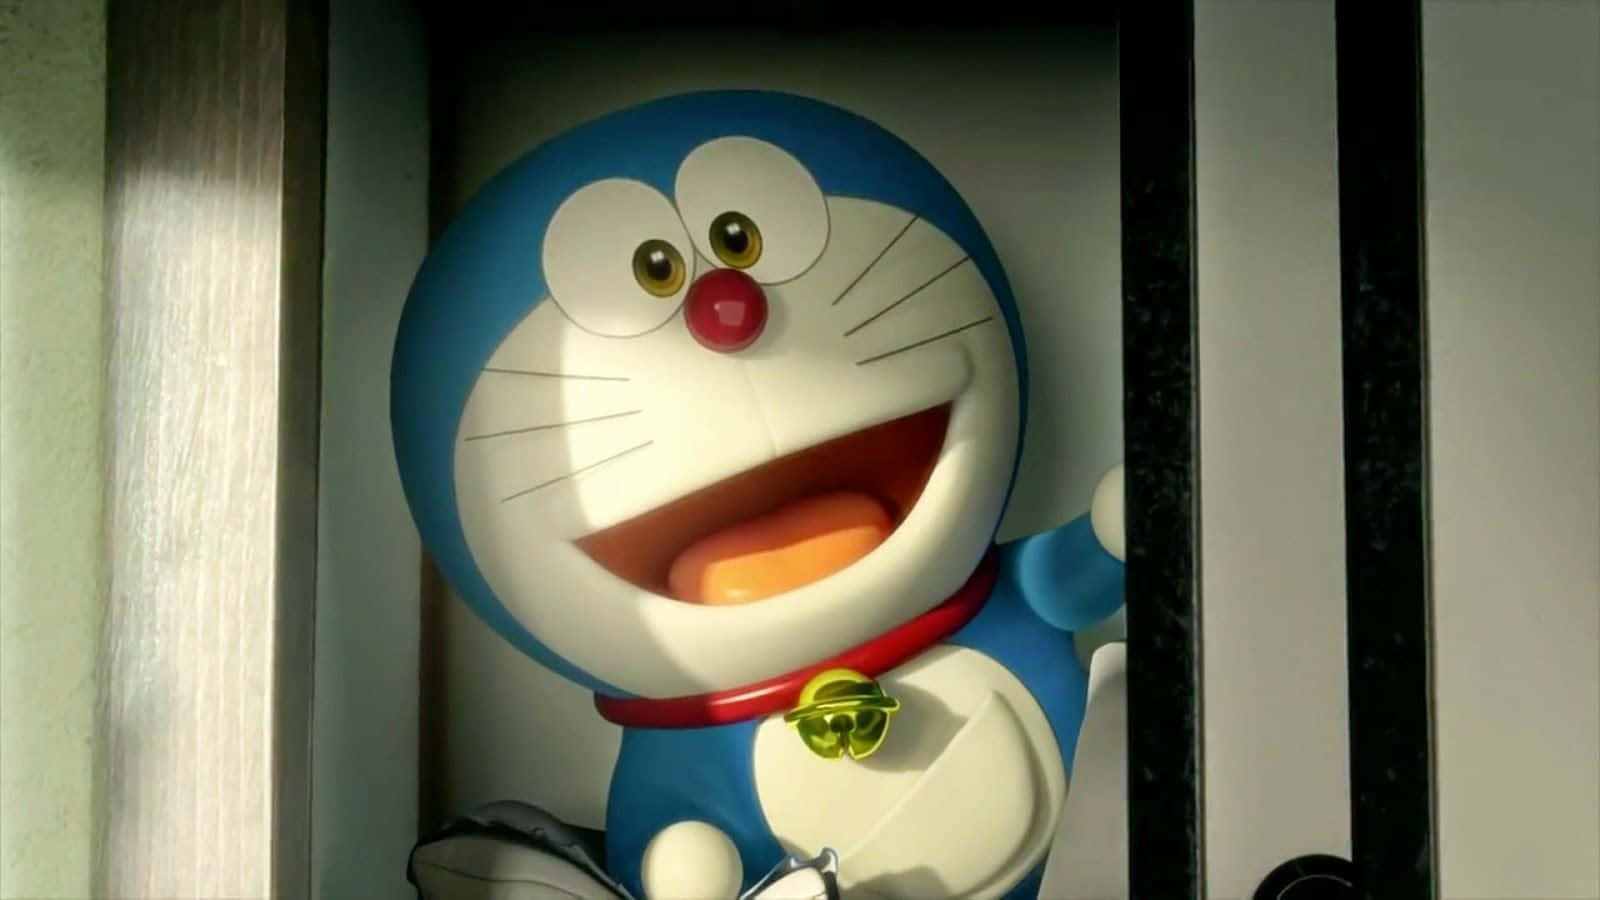 Doraemonklar Til At Opfylde Dine Ønsker.